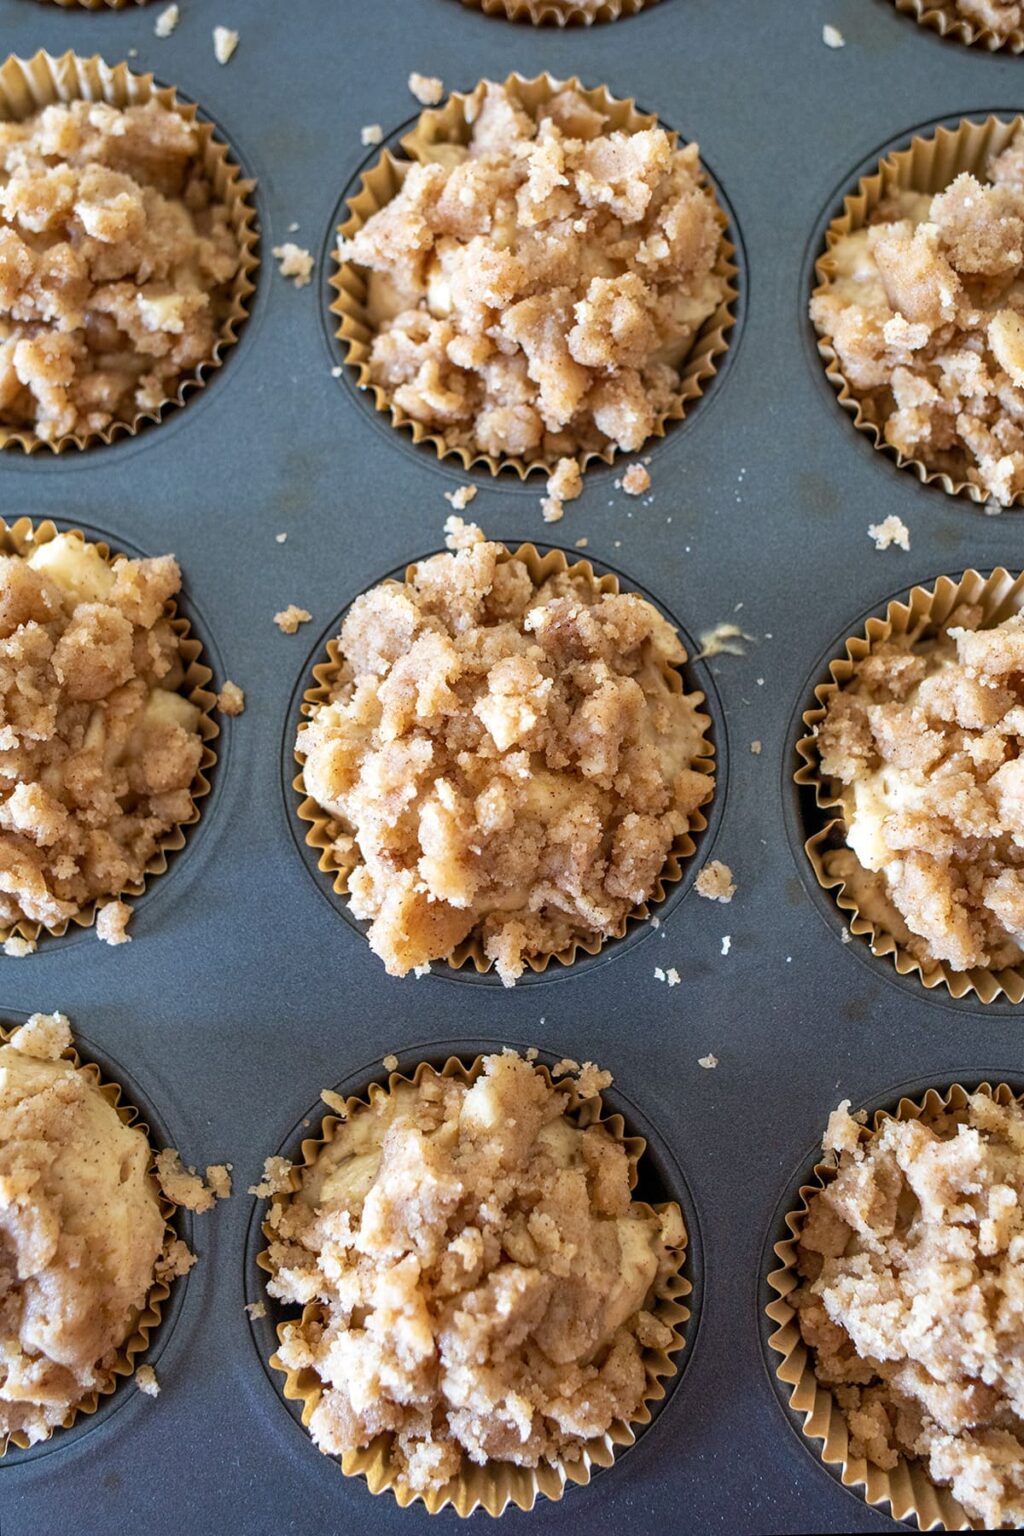 Apple Cinnamon Streusel Muffins • Freutcake